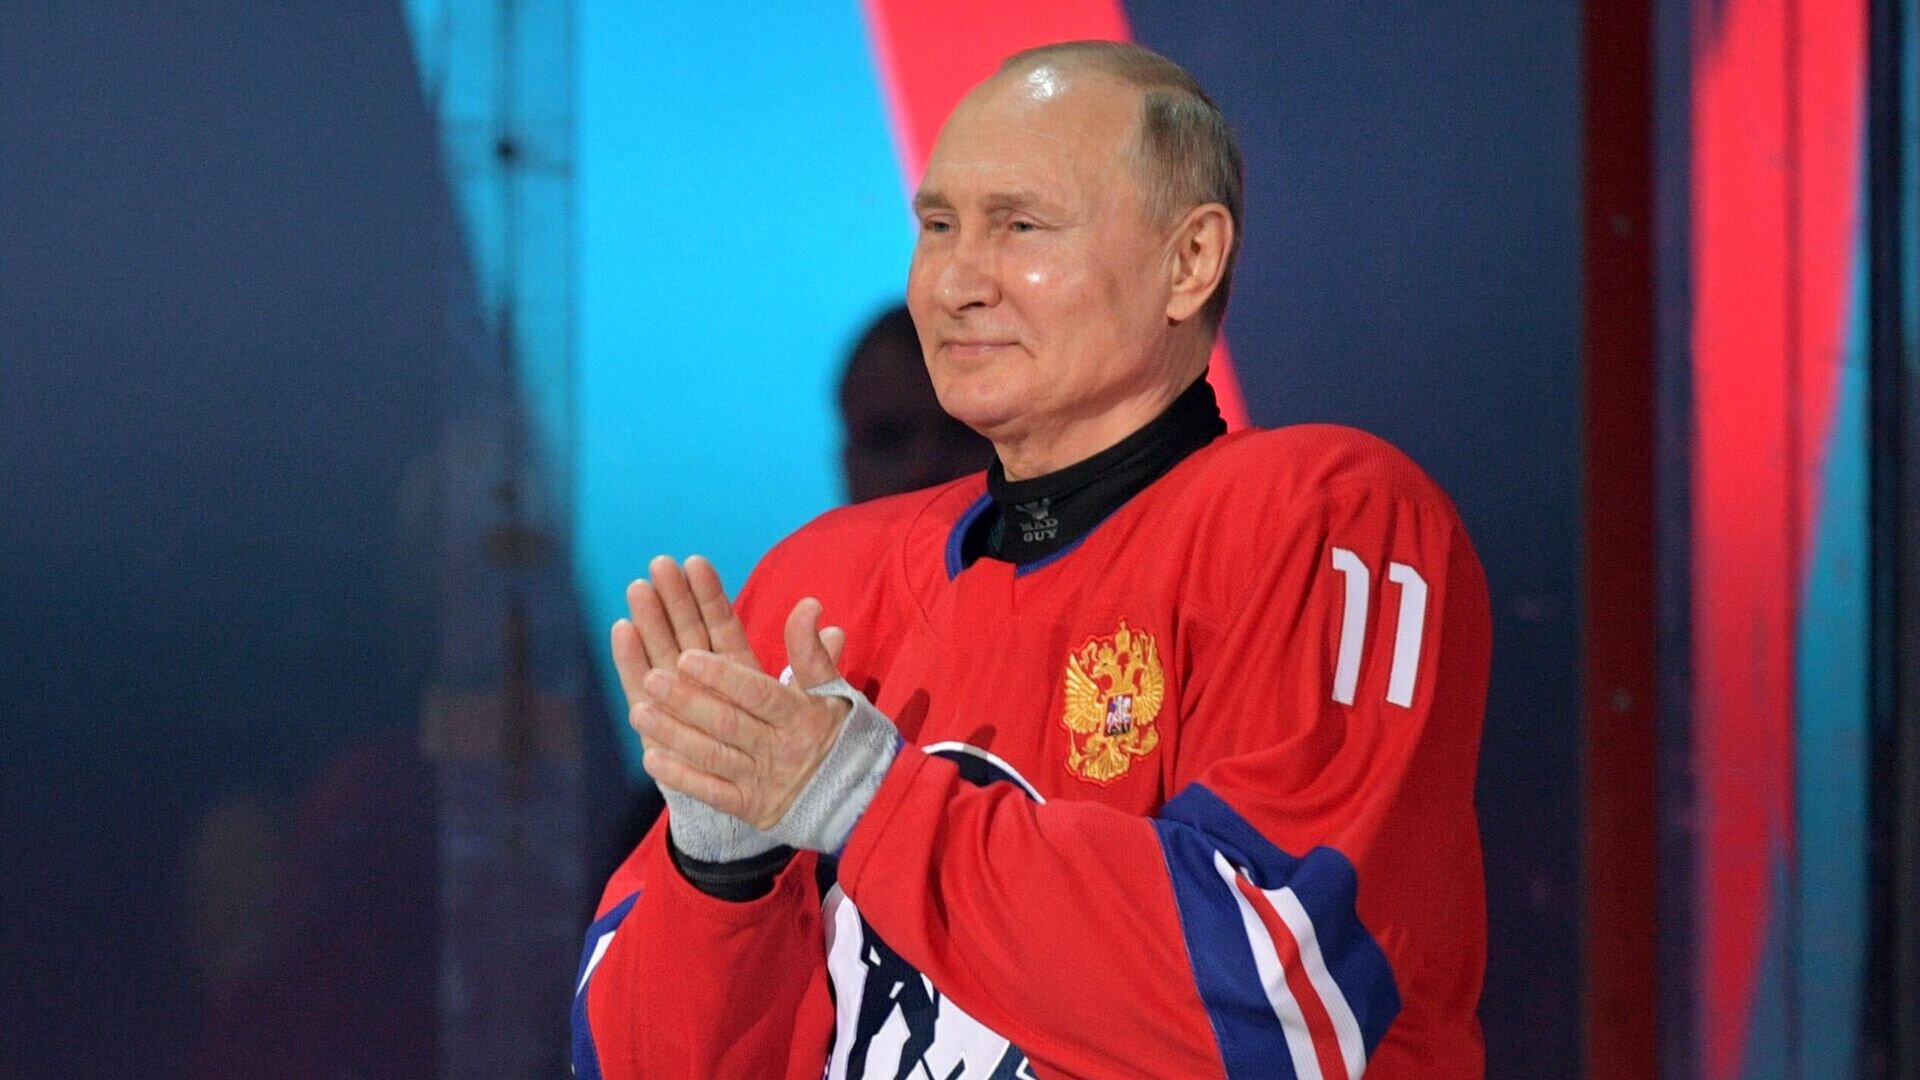 Гуськов о Ночной лиге: Путин поддержал ее создание, мы только собираем положительные плоды. Ставим во главу угла спорт, а не бары-рестораны  нация становится сильнее